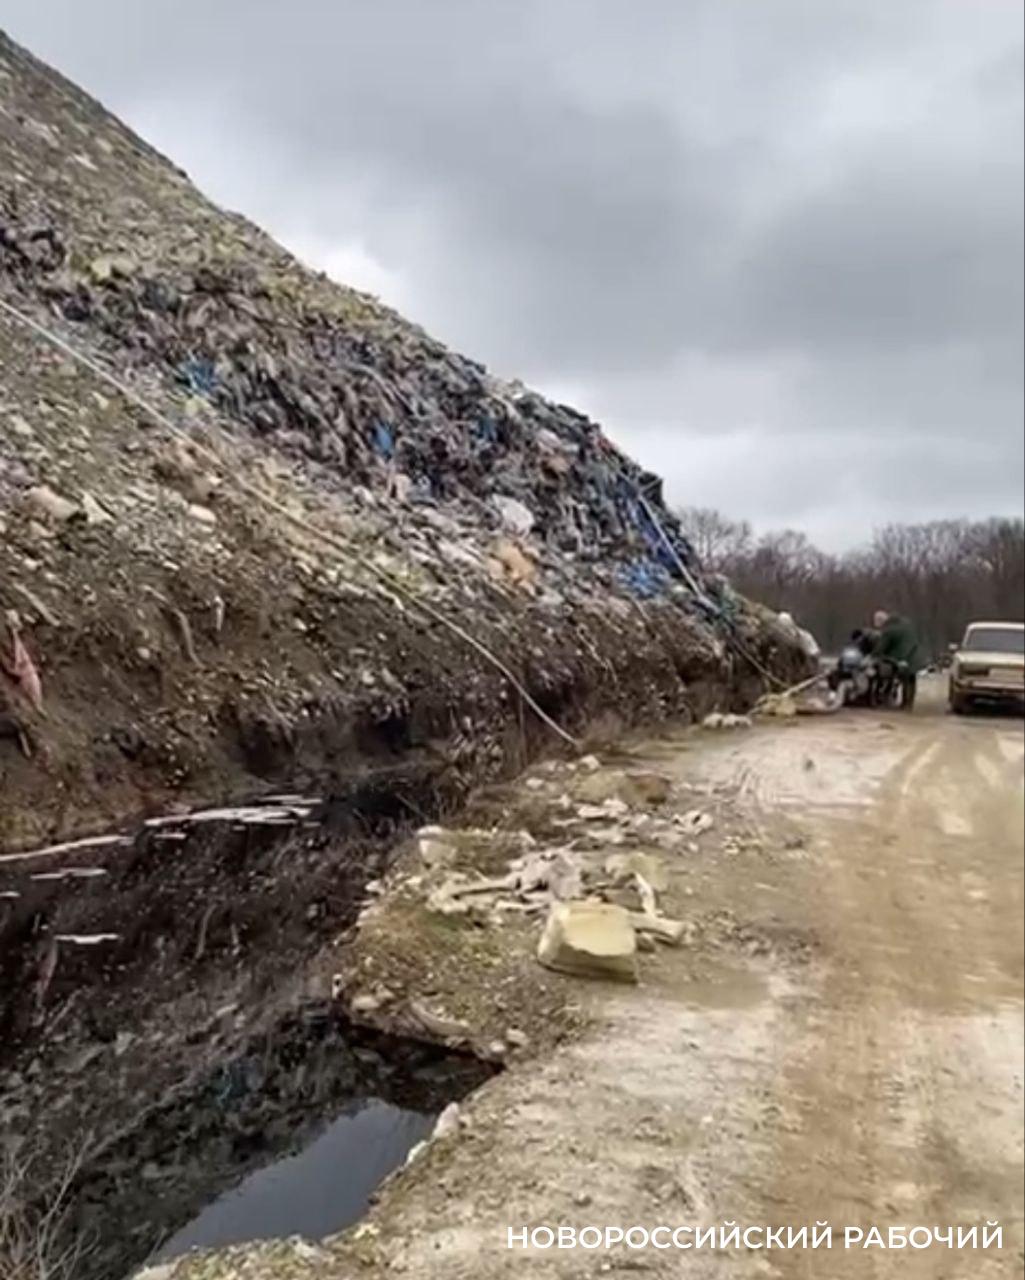 Экологическая активистка побывала на мусорном полигоне Новороссийска со следственной группой